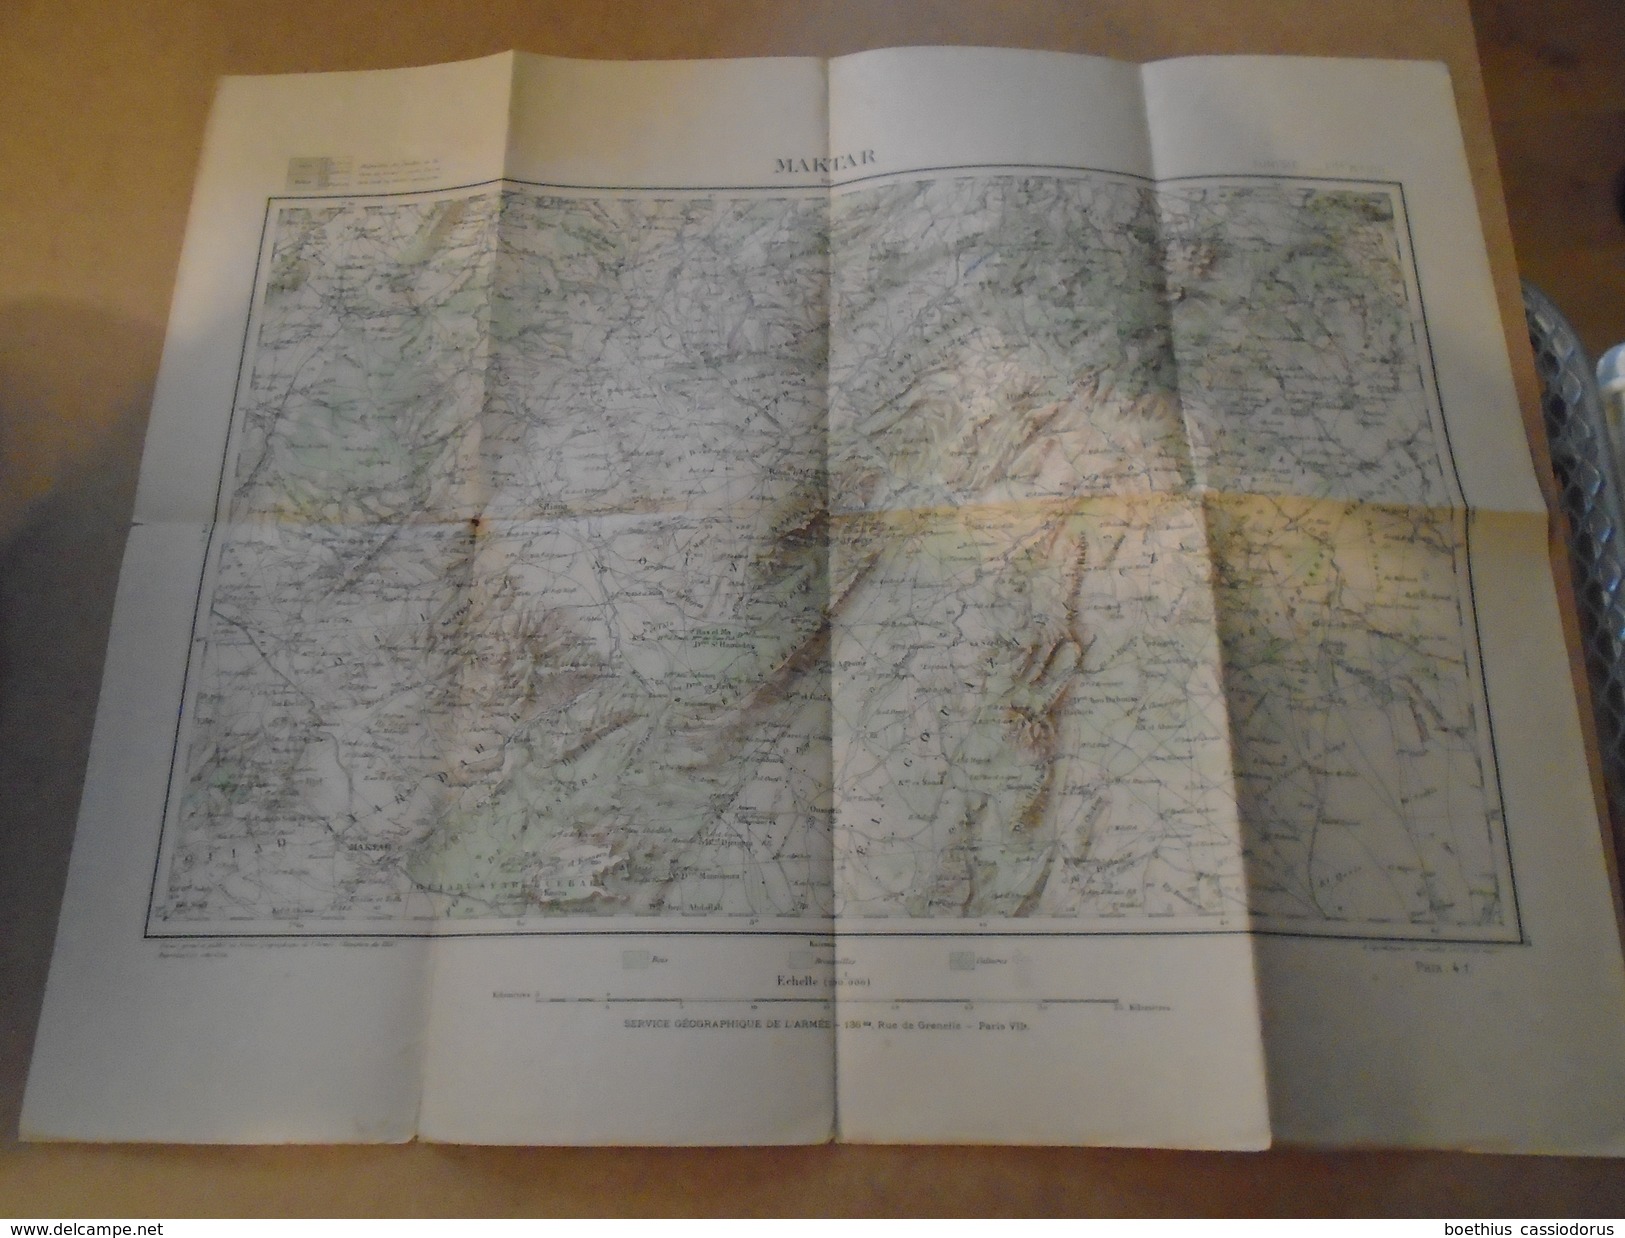 MAKTAR  GRAVE, DRESSE, ET PUBLIE AU  SERVICE GEOGRAPHIQUE DE L'ARMEE  REVISION DE 1931  TUNISIE FEUILLE VIII - Cartes Géographiques